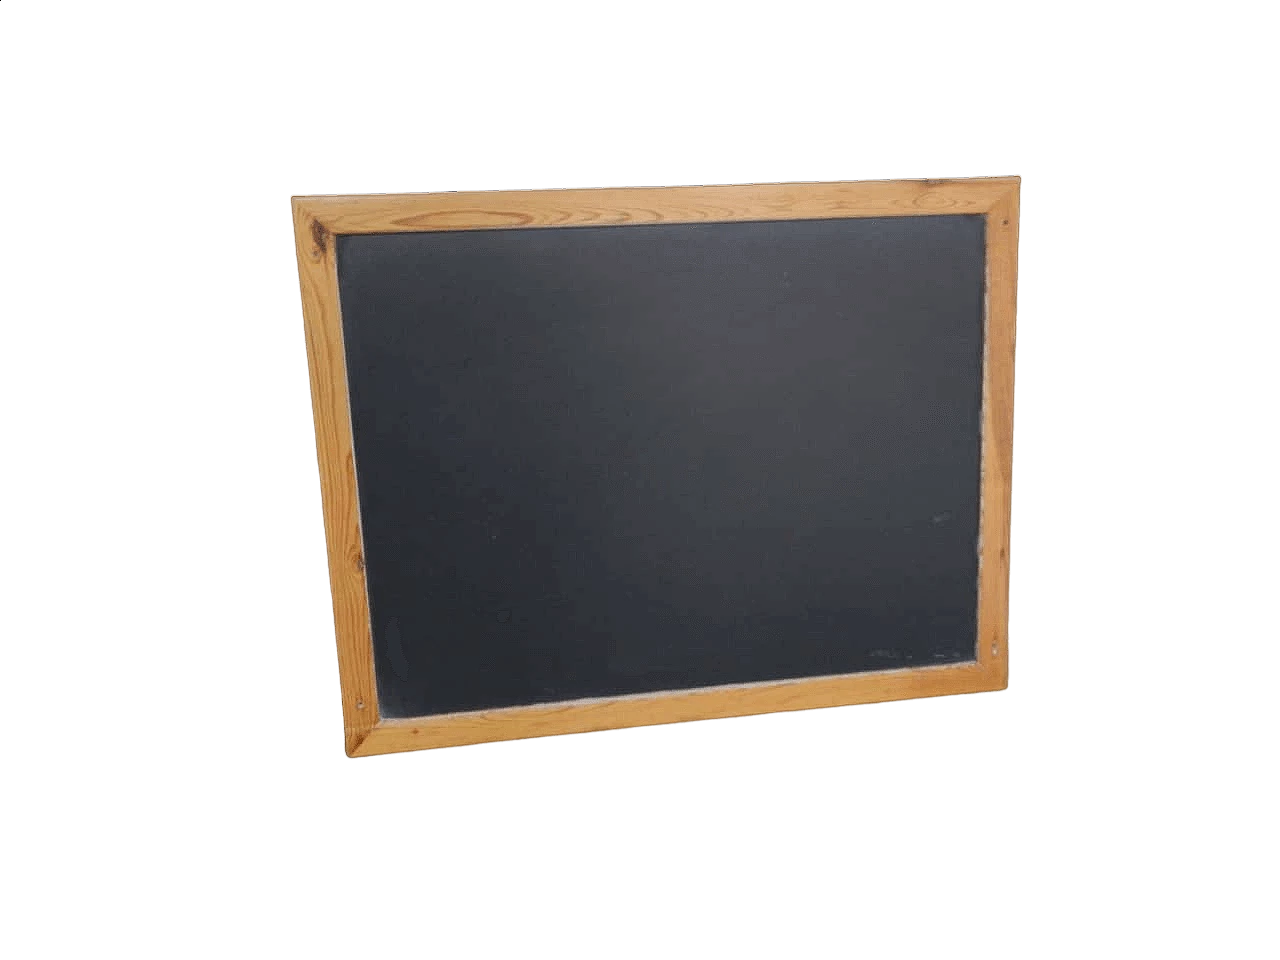 School wall blackboard with wooden frame, 1960s 10